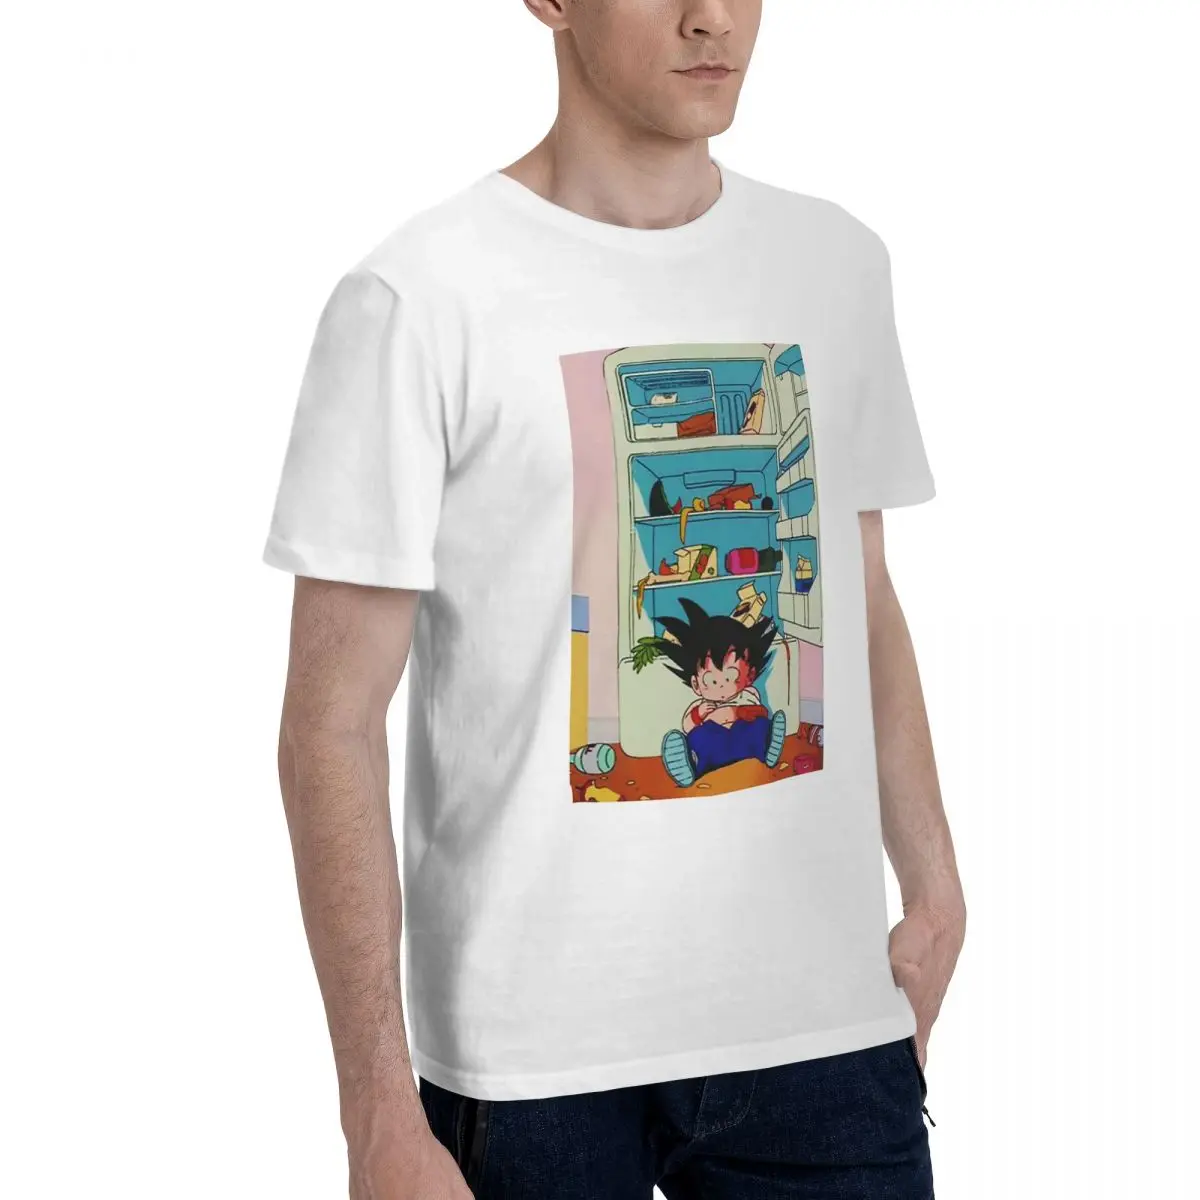 Bandai Драконий жемчуг Гоку и холодильники мужские футболки с рисунком из